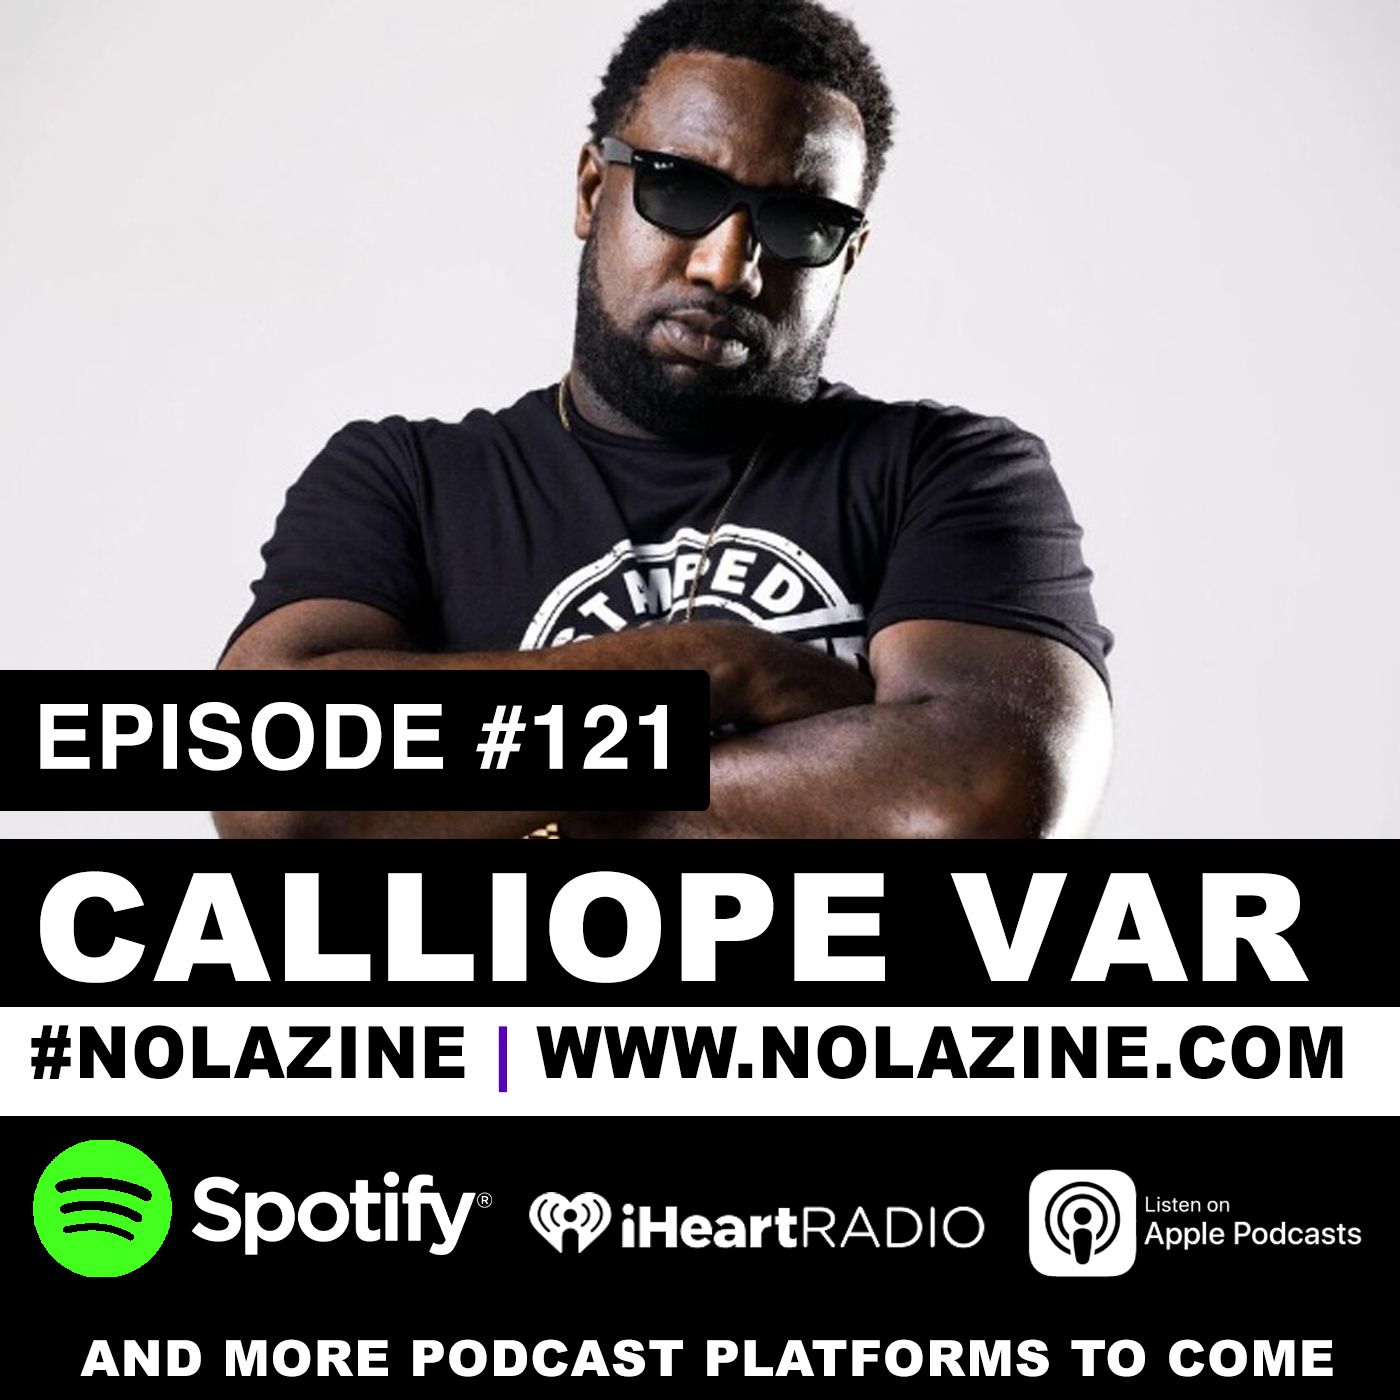 EP: 121 Featuring Calliope Var